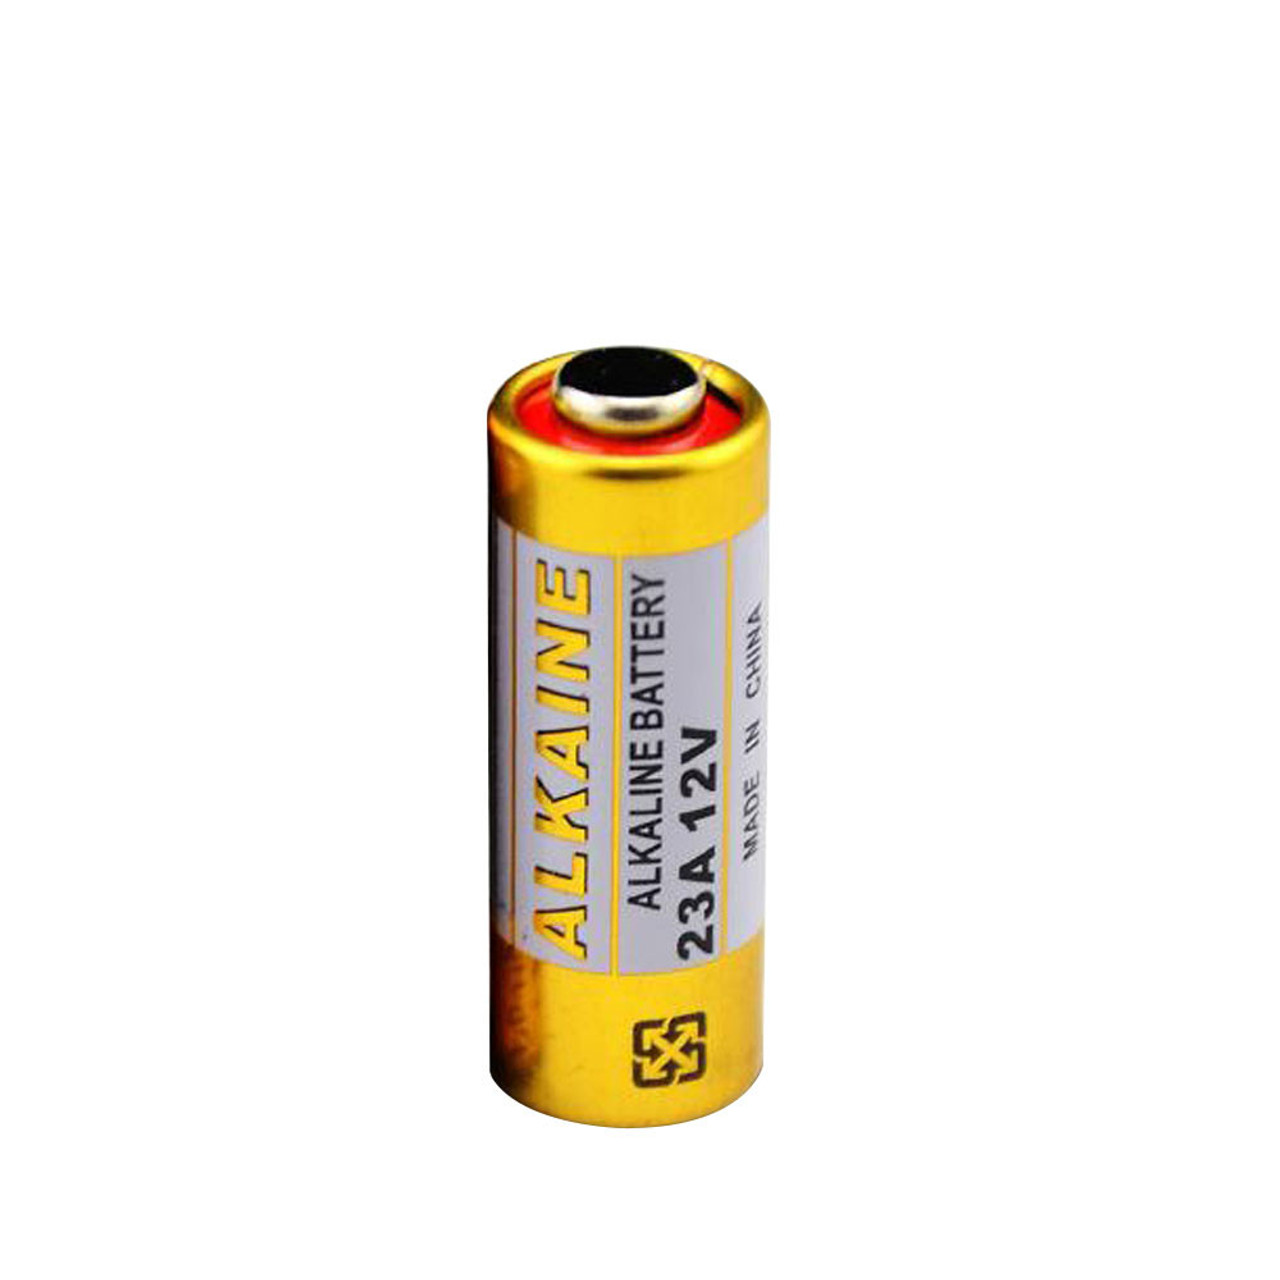 12v battery